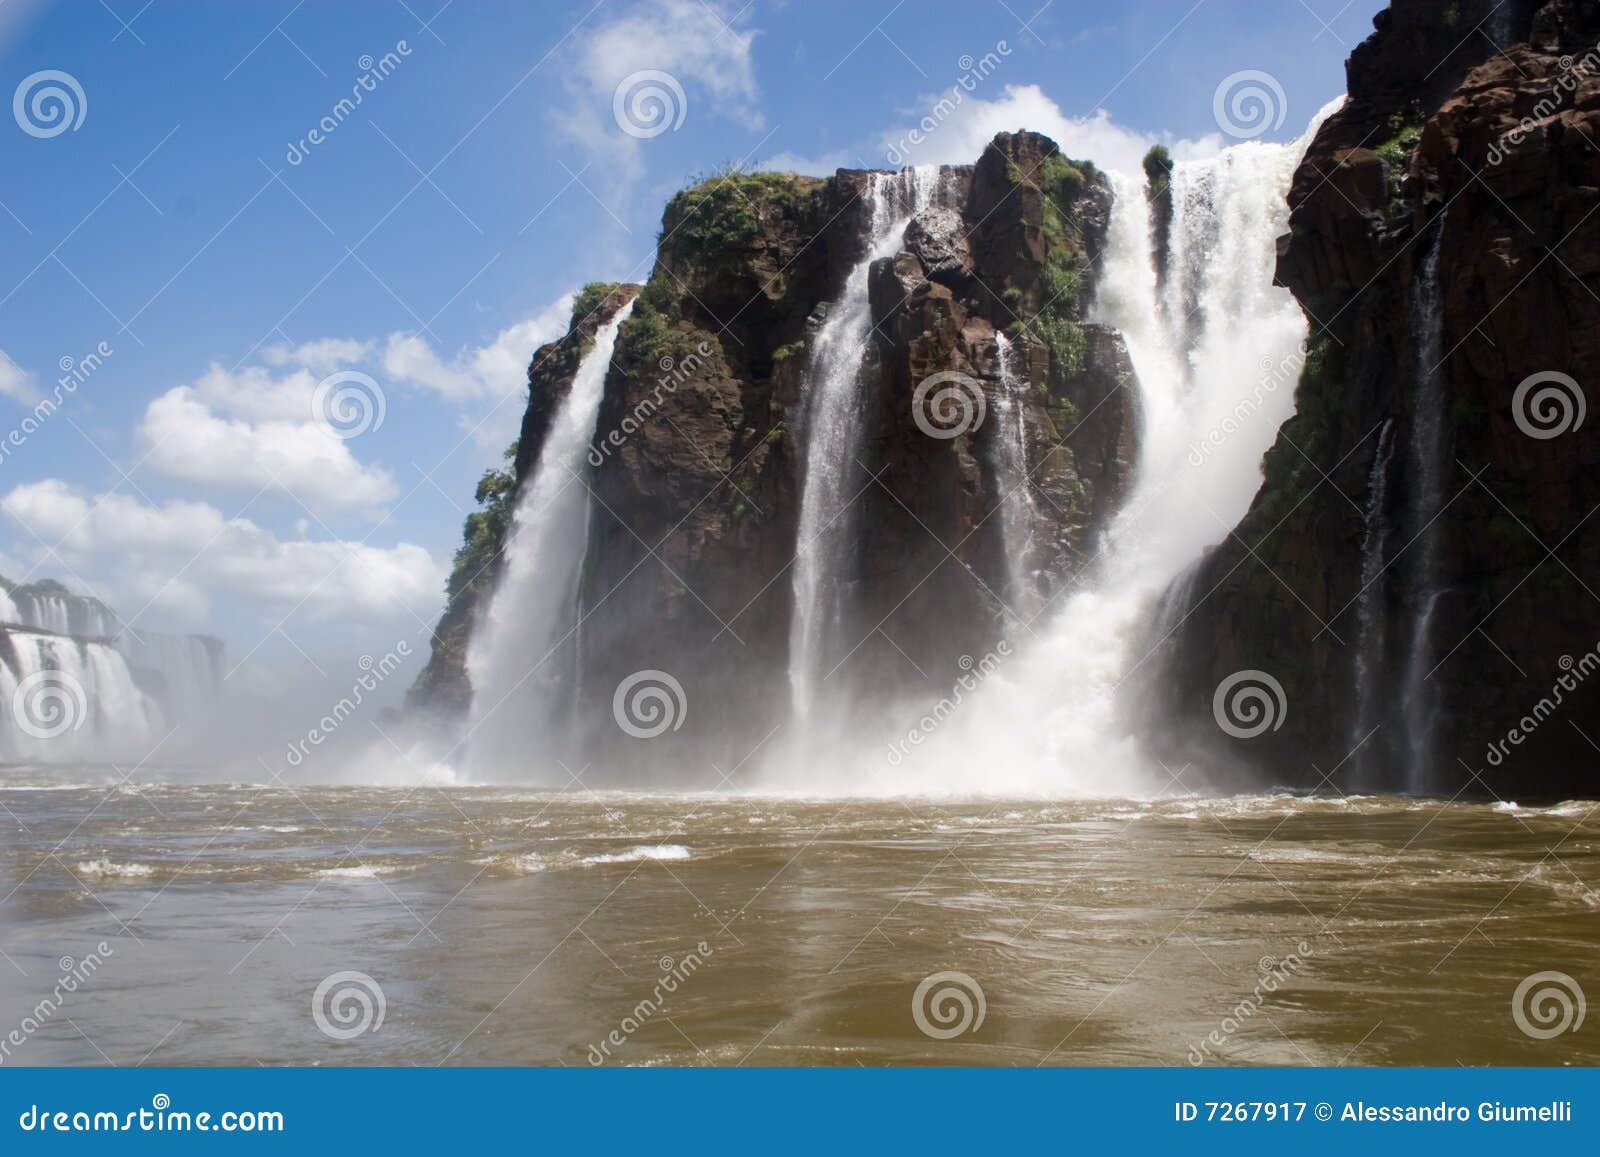 inside iguassu falls 2